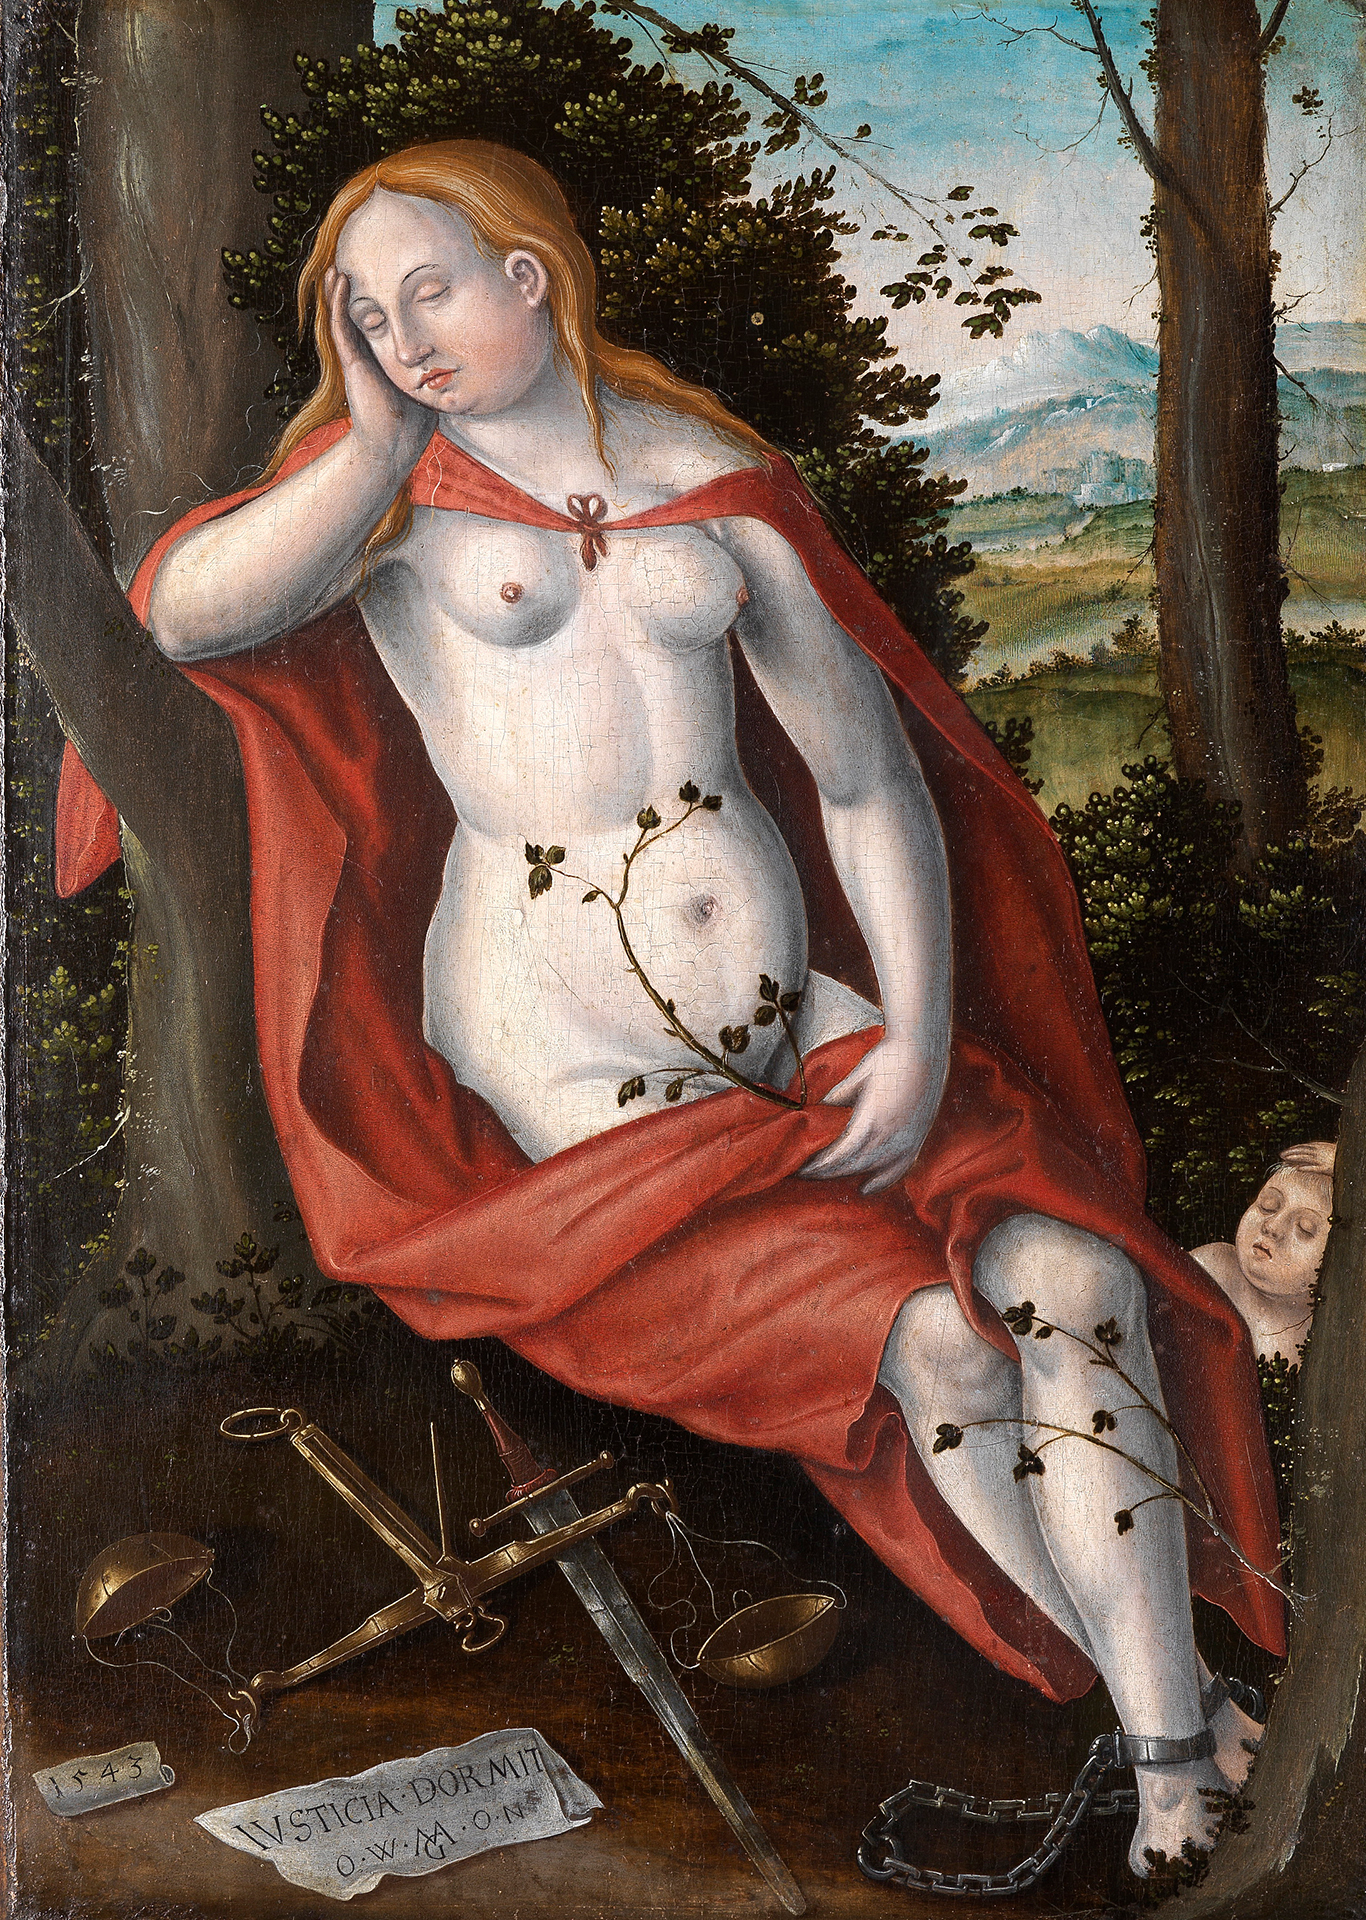 Abbildung einer in der Natur im sitzen schlafenden Frau im roten Gewand und Fußfessel